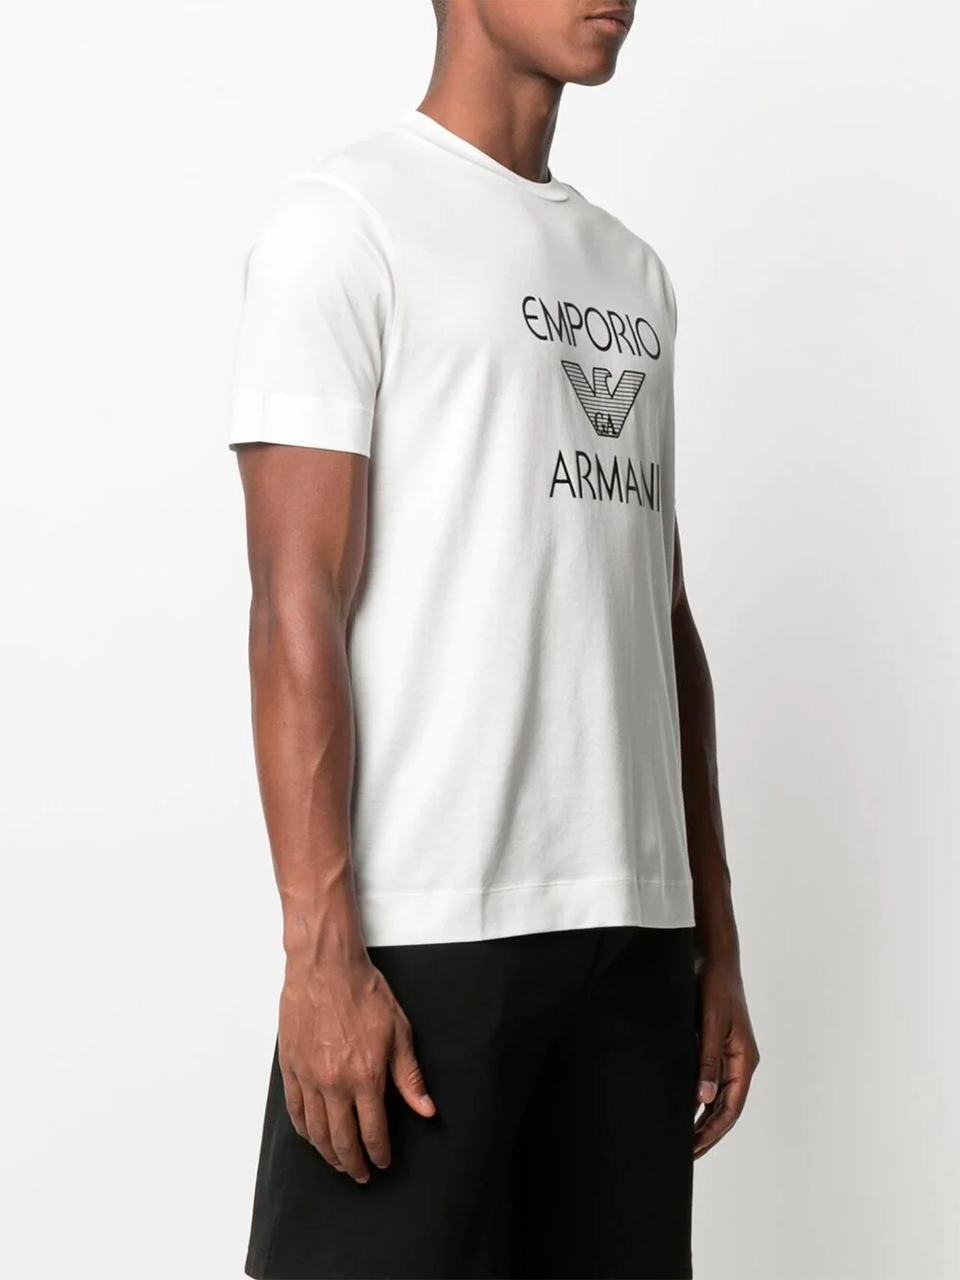 Imagem de: Camiseta Emporio Armani Branca com Estampa Preta